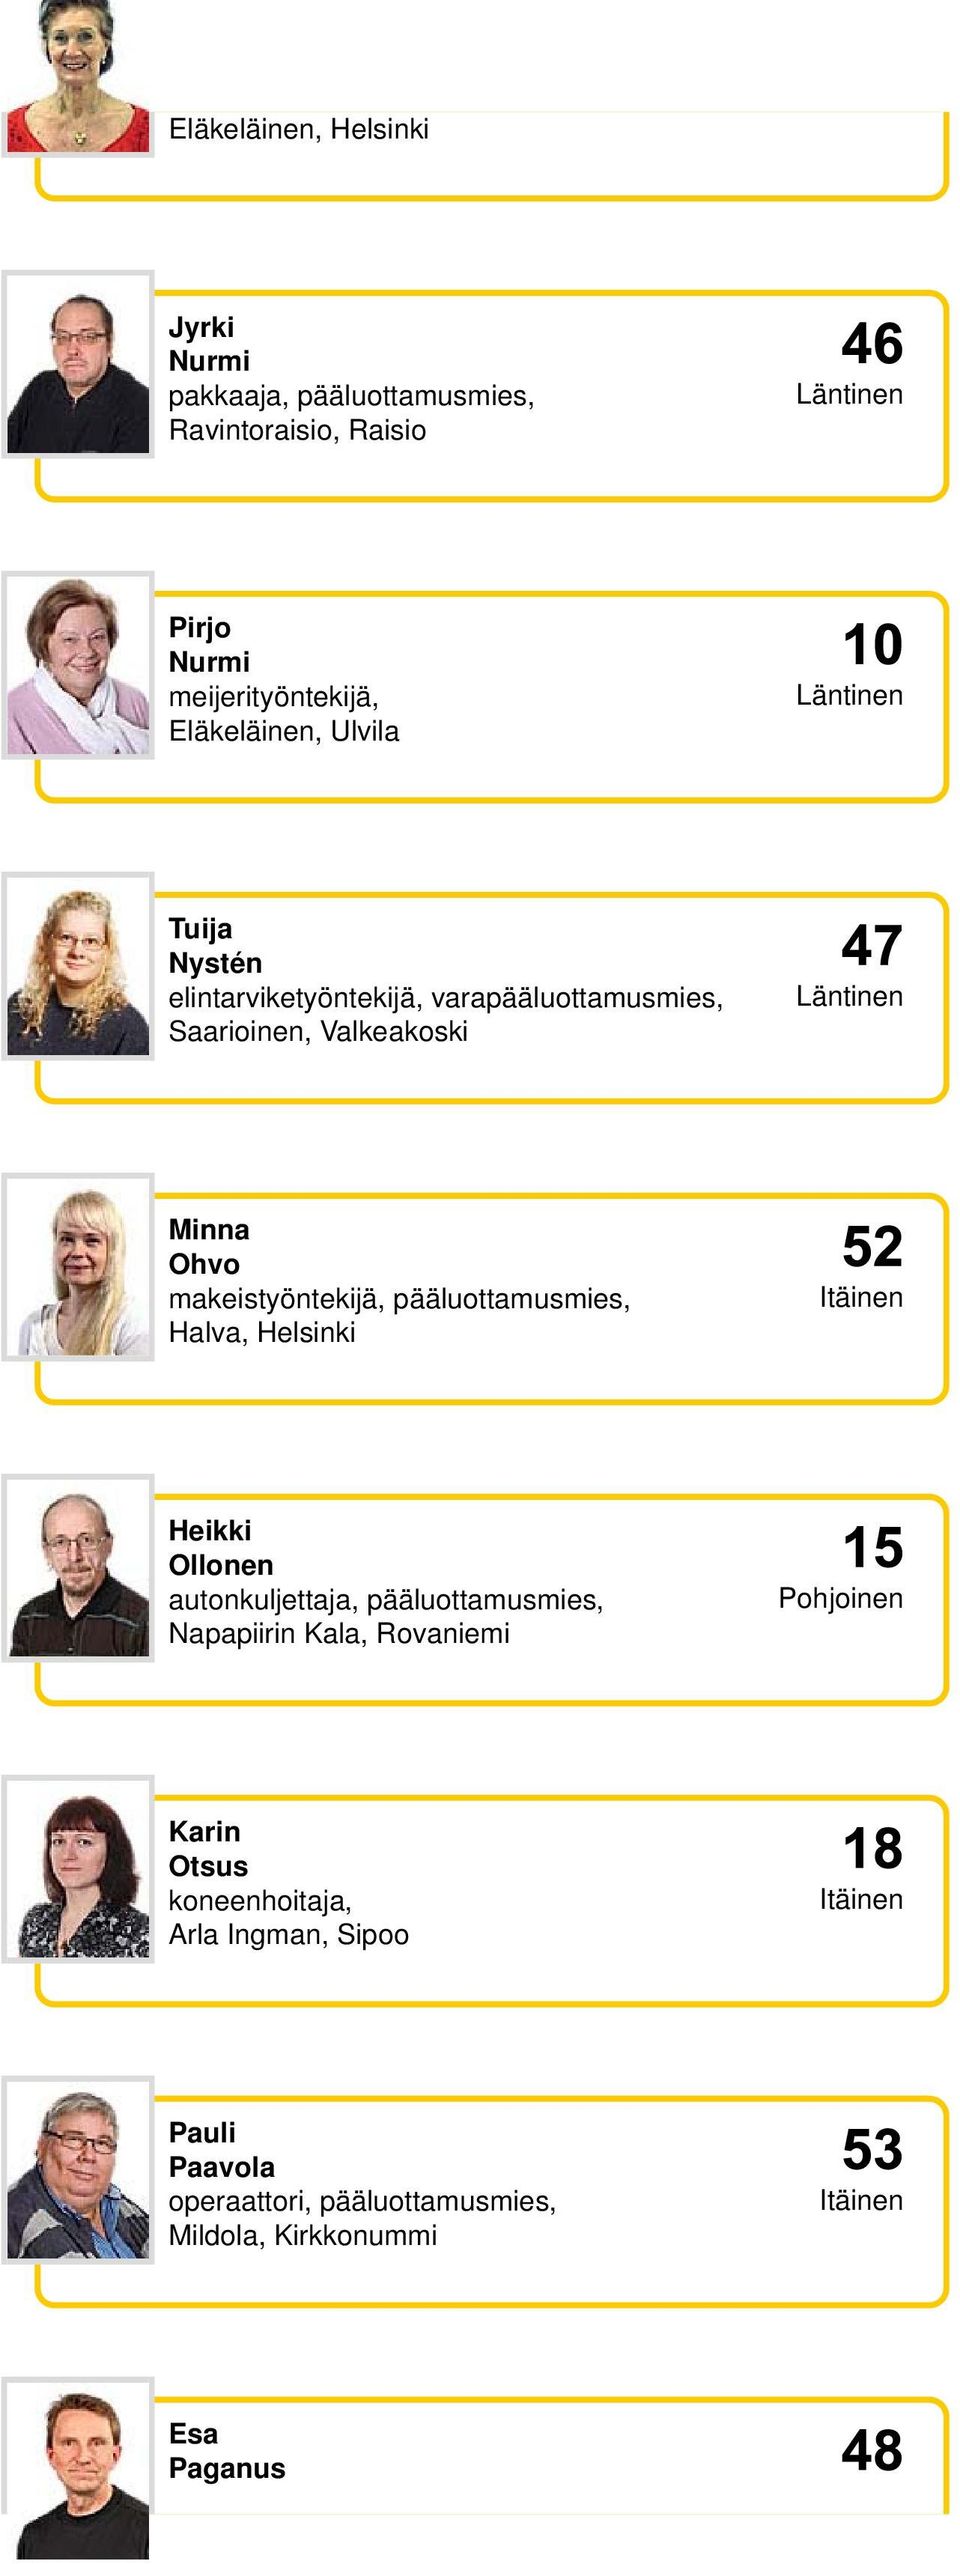 pääluottamusmies, Halva, Helsinki Heikki Ollonen autonkuljettaja, pääluottamusmies, Napapiirin Kala, Rovaniemi